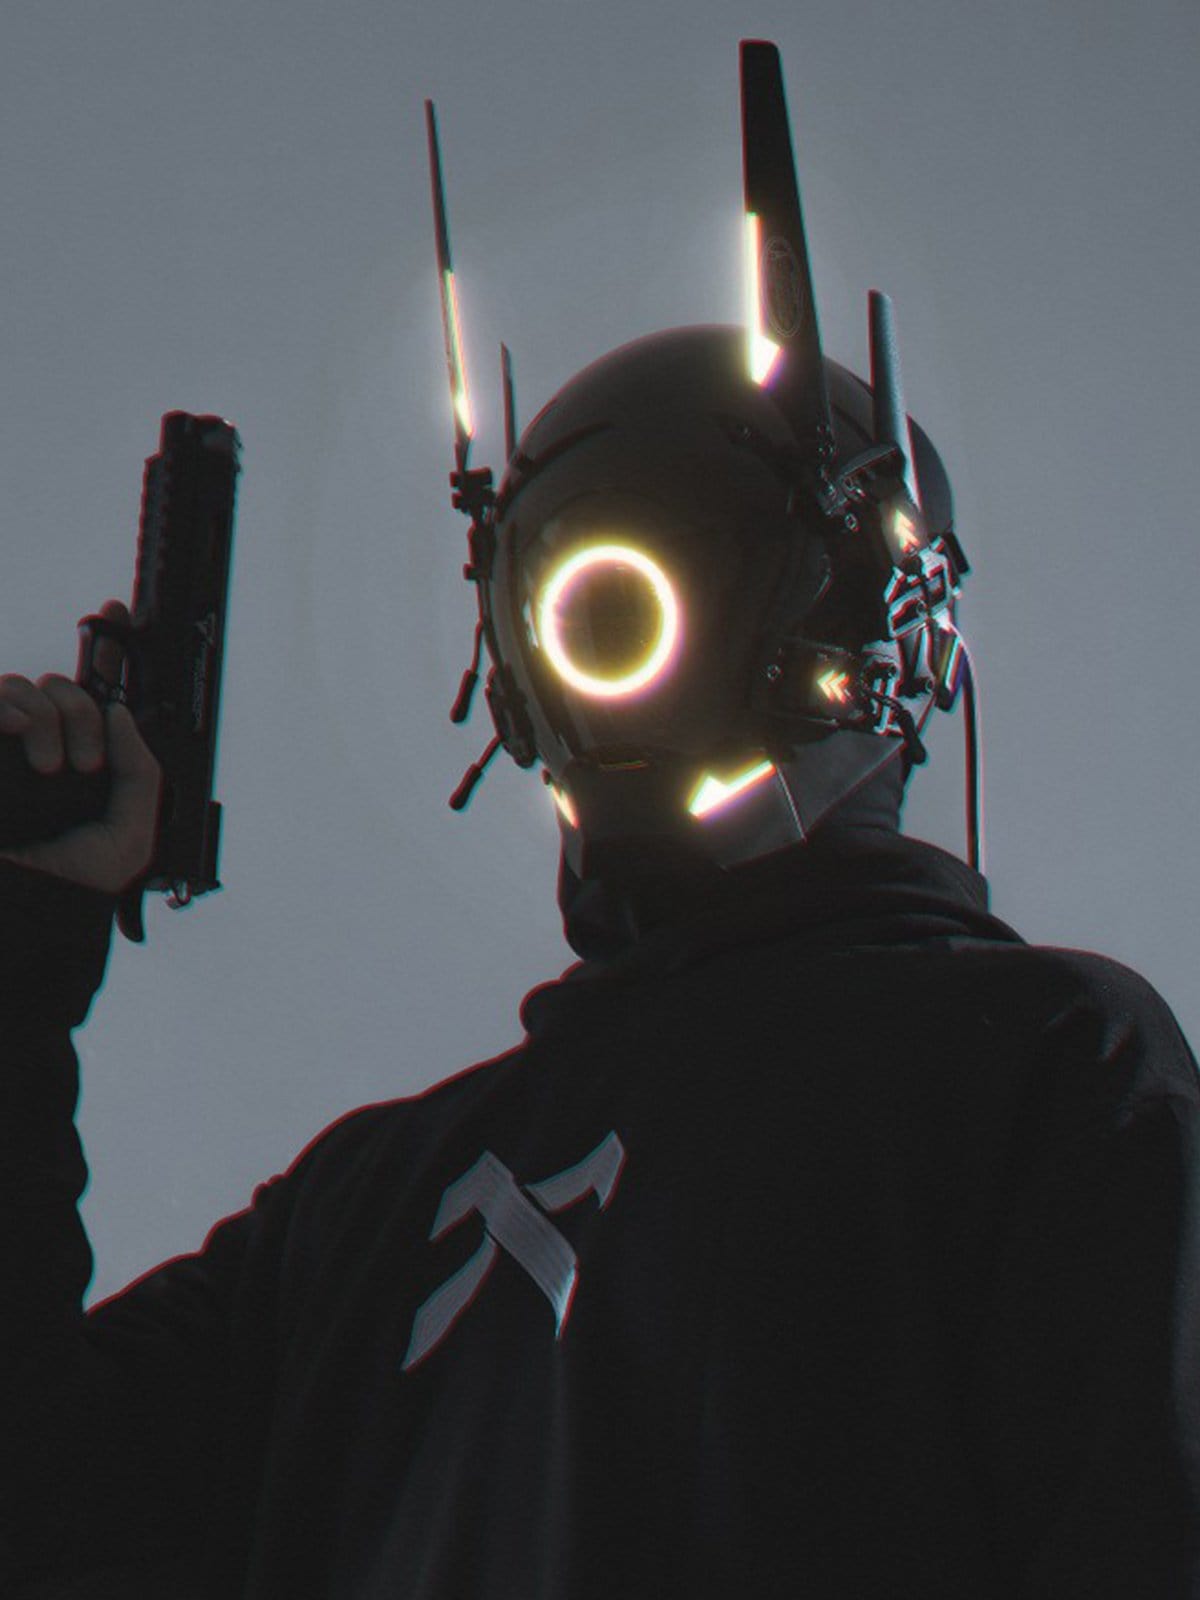 Cyberpunk Glowing Circle Mask